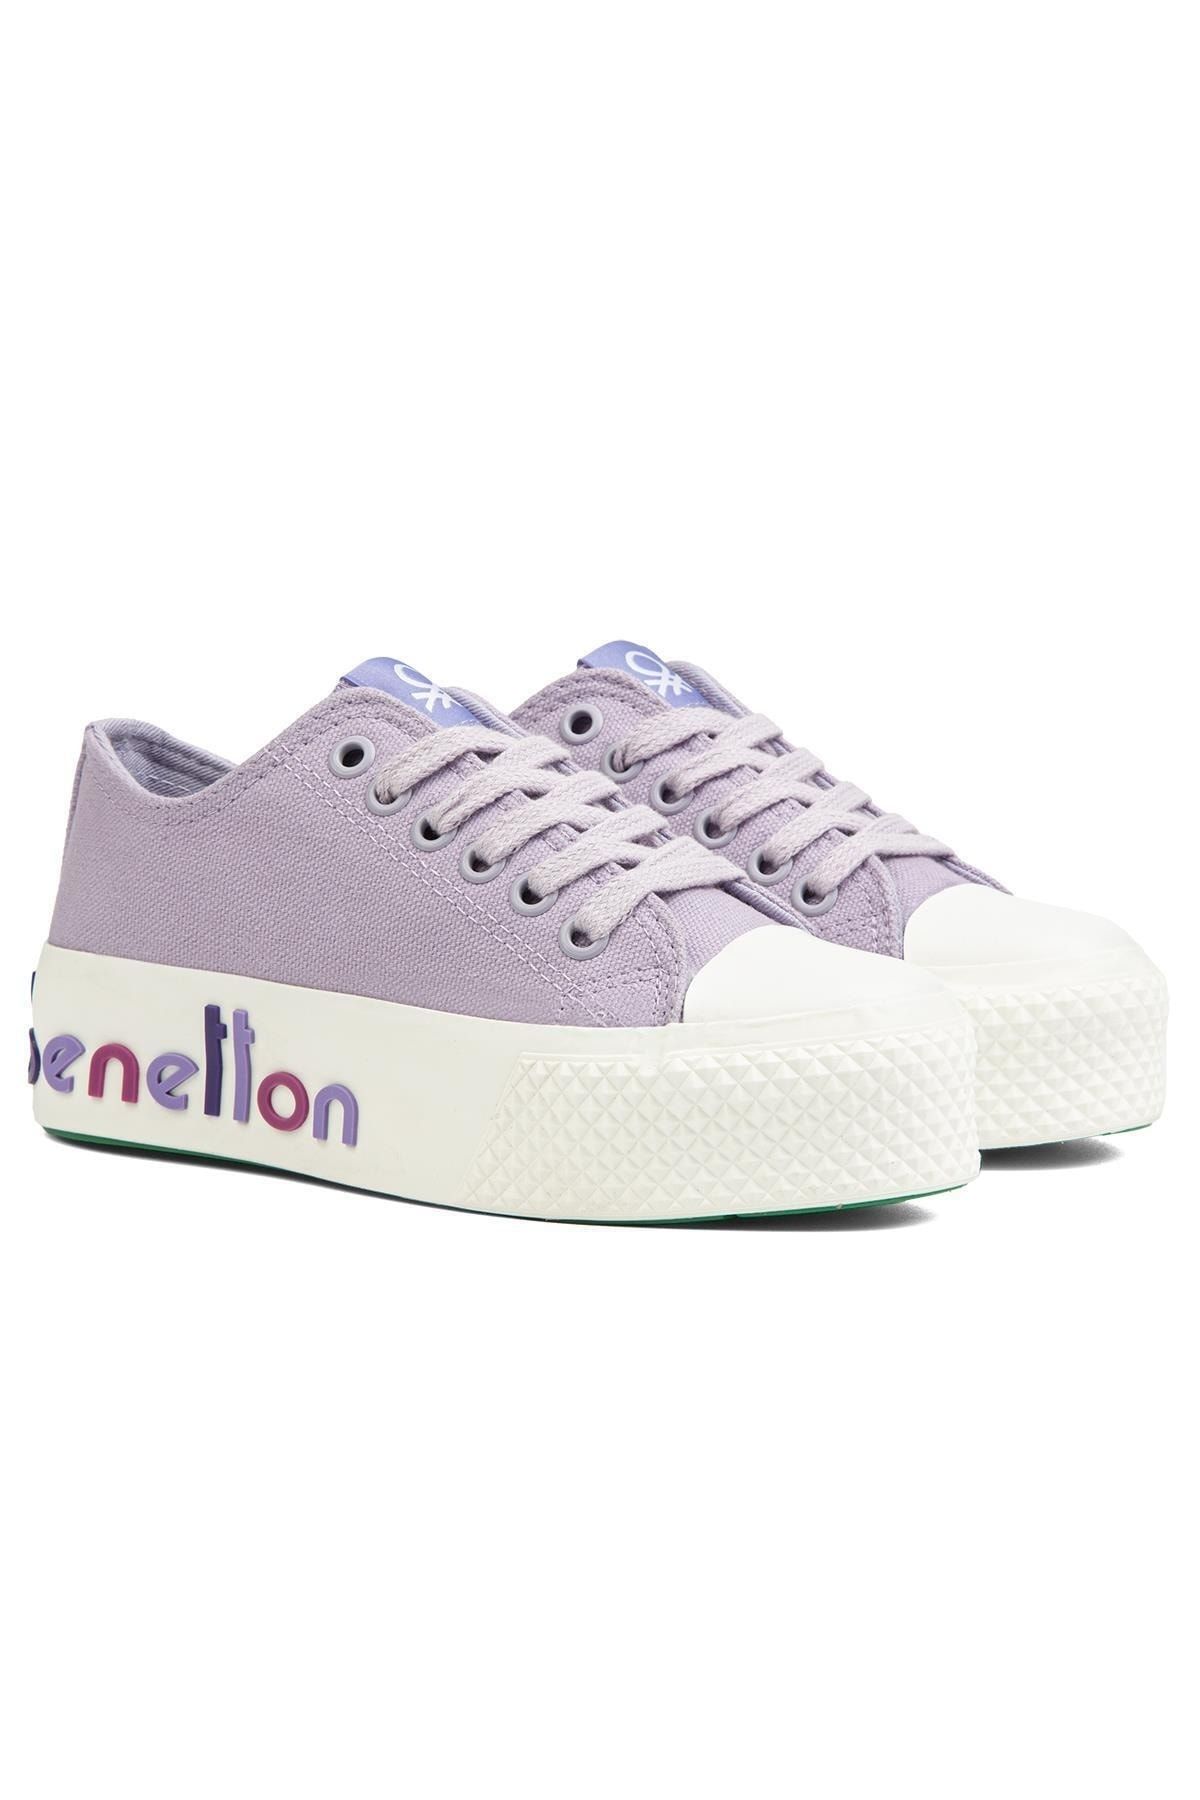 Benetton ® | BN-30936 - Lila - Kadın Spor Ayakkabı